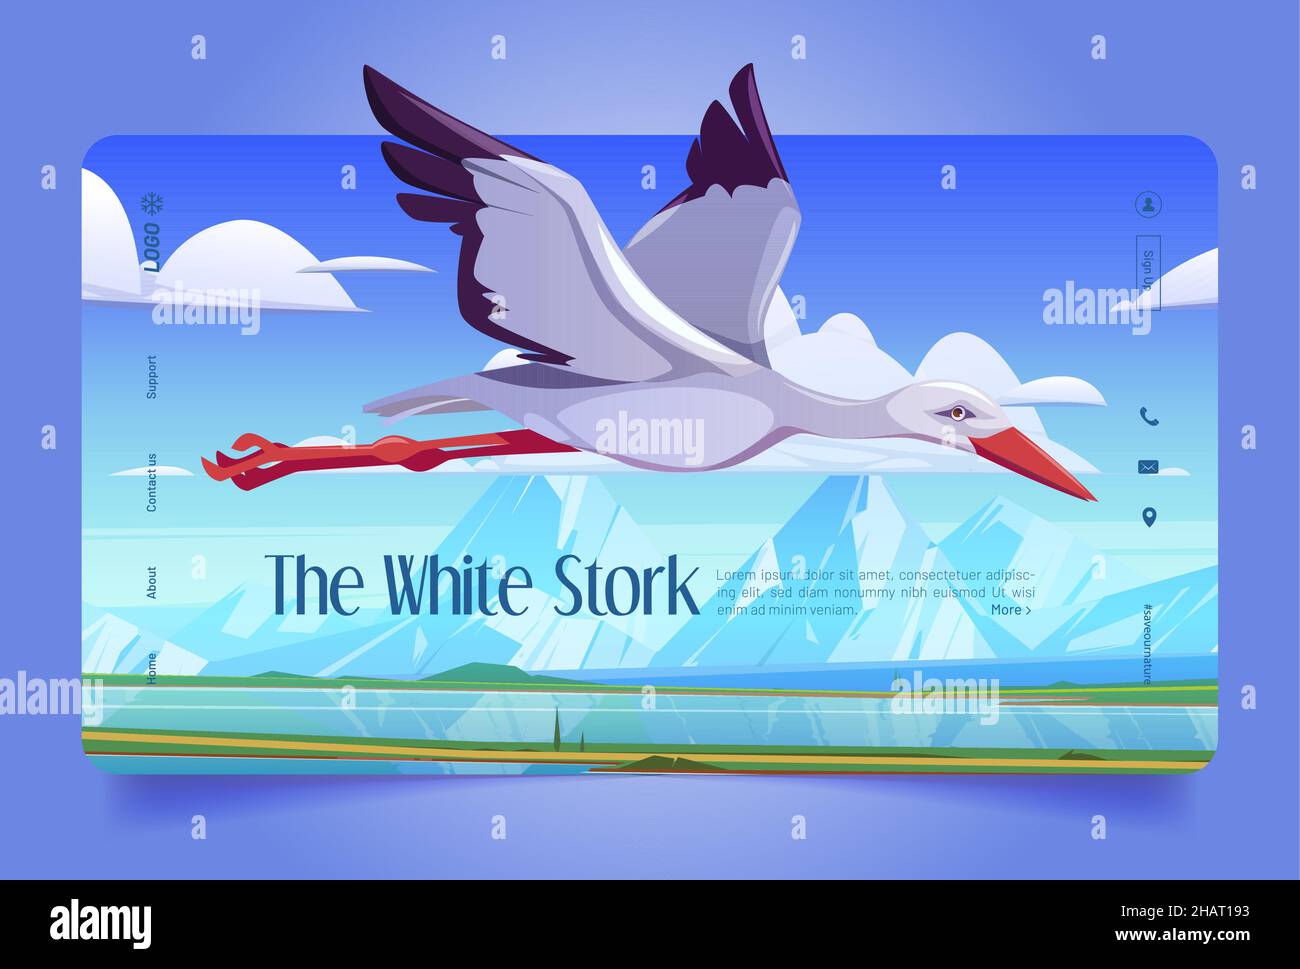 Weiße Storch Cartoon Landing Page, schöne Wildvögel fliegen in blau bewölkten Himmel über natürliche Frühlingslandschaft mit Bergen, Fluss und grünen Feldern. Ornithologie, Tierwelt, Vektor-Webbanner Stock Vektor